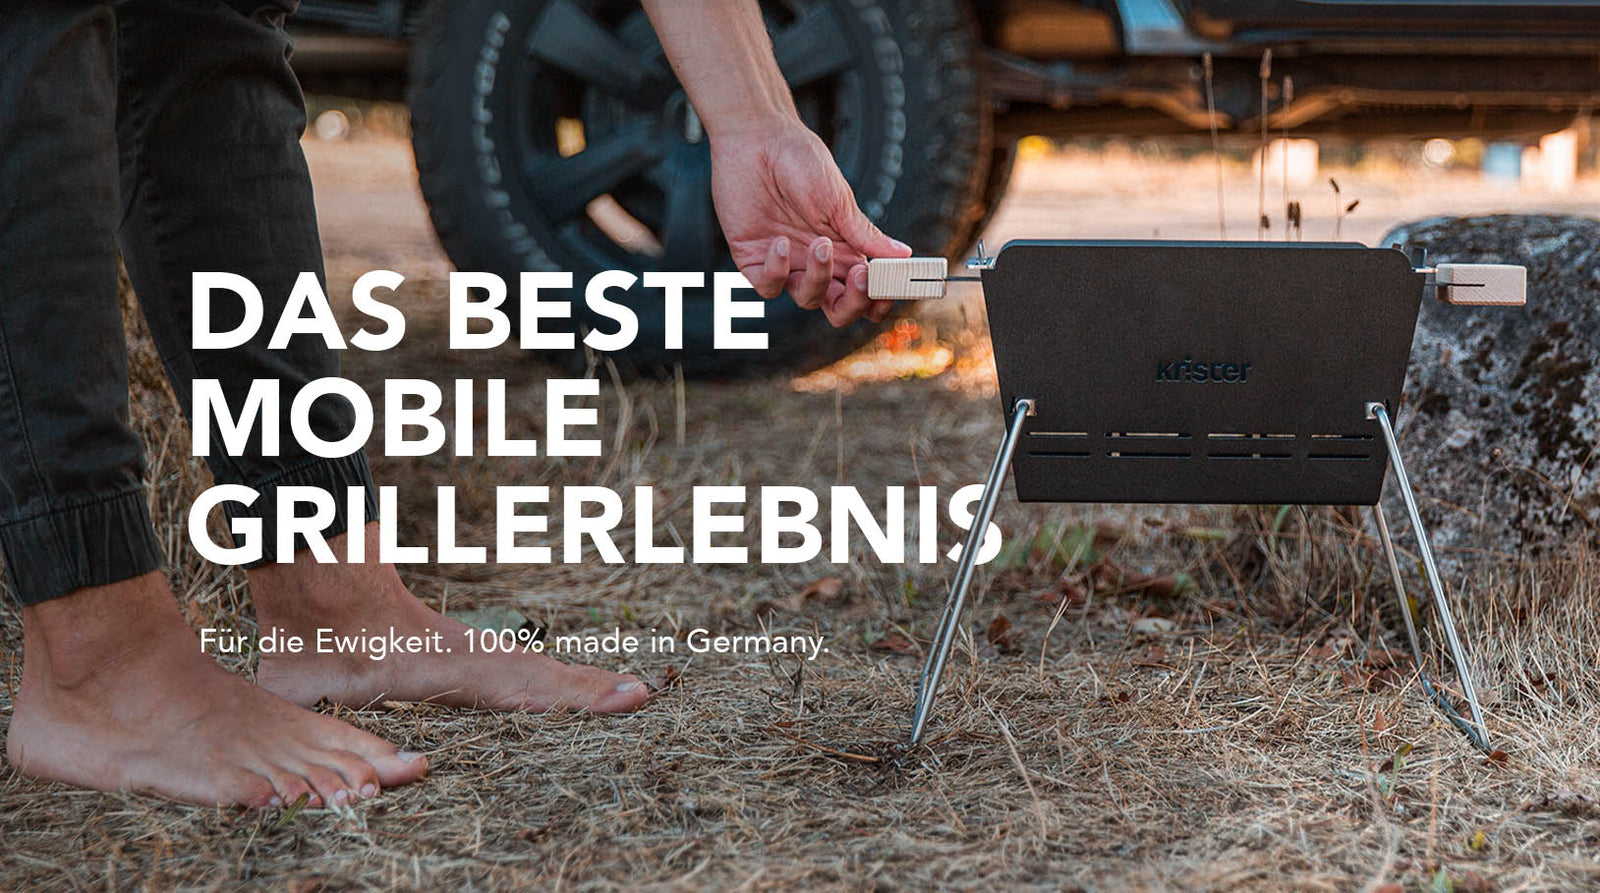 Knister Grill das Beste mobile Grillerlebnis. Gemacht für die Ewigkeit, 100Grill Produktion in Deutschland